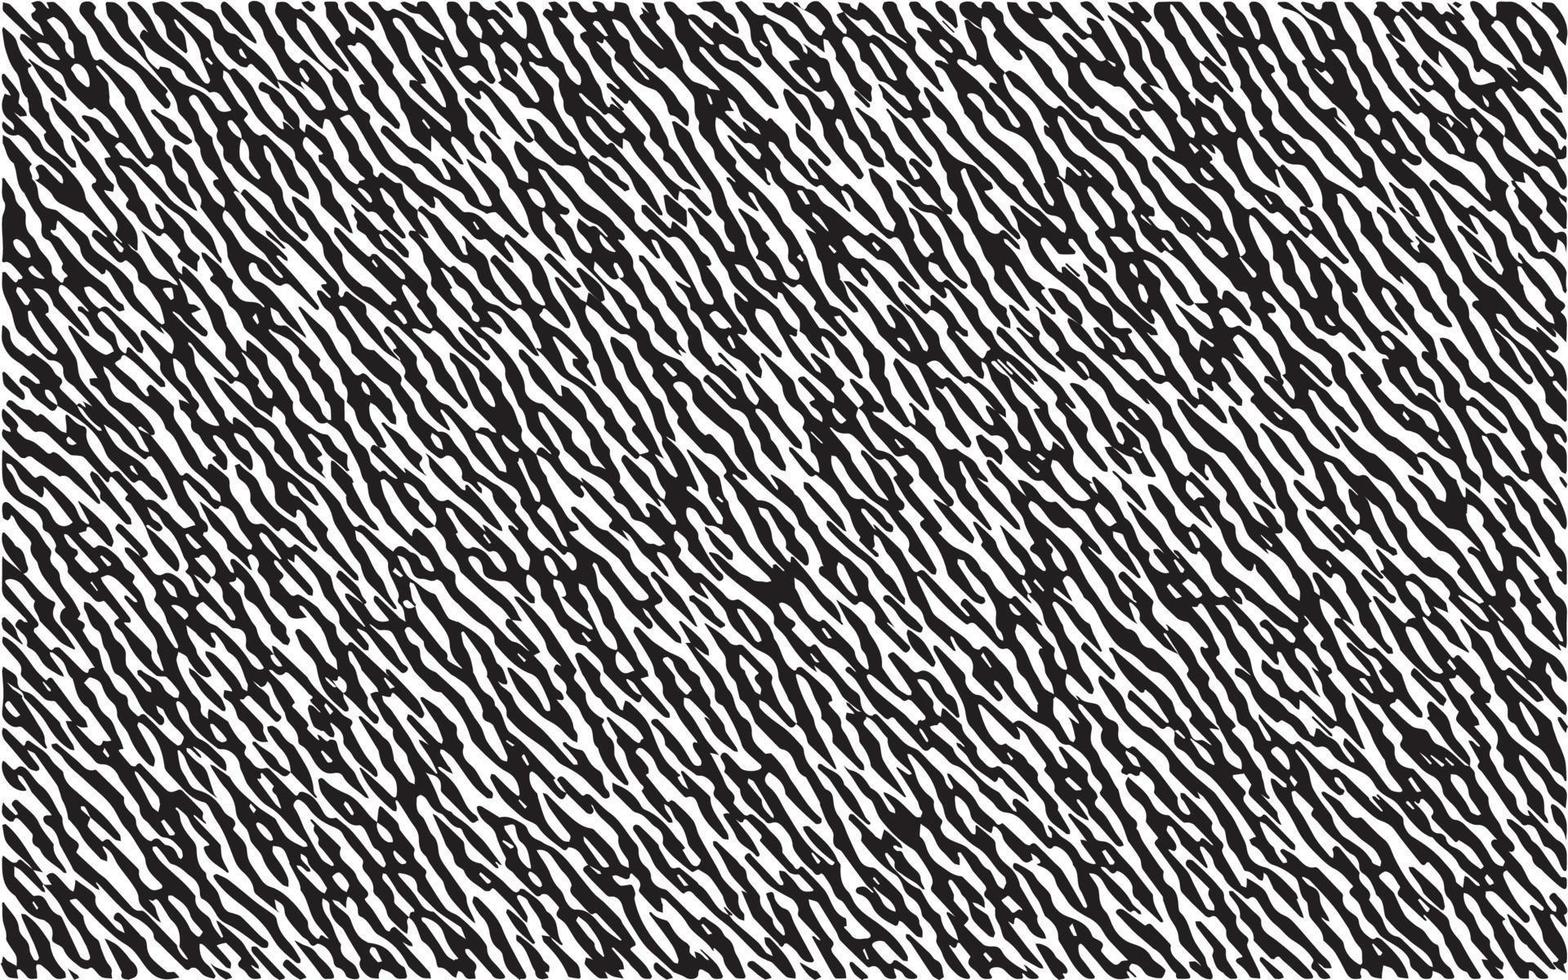 Schwarz-Weiß-Zebra-Textur-Muster-Design. Tierpelz Vektor Illustration Hintergrund gestreiftes Muster. schwarze geschwungene linien mit rauer textur isoliert auf weiß